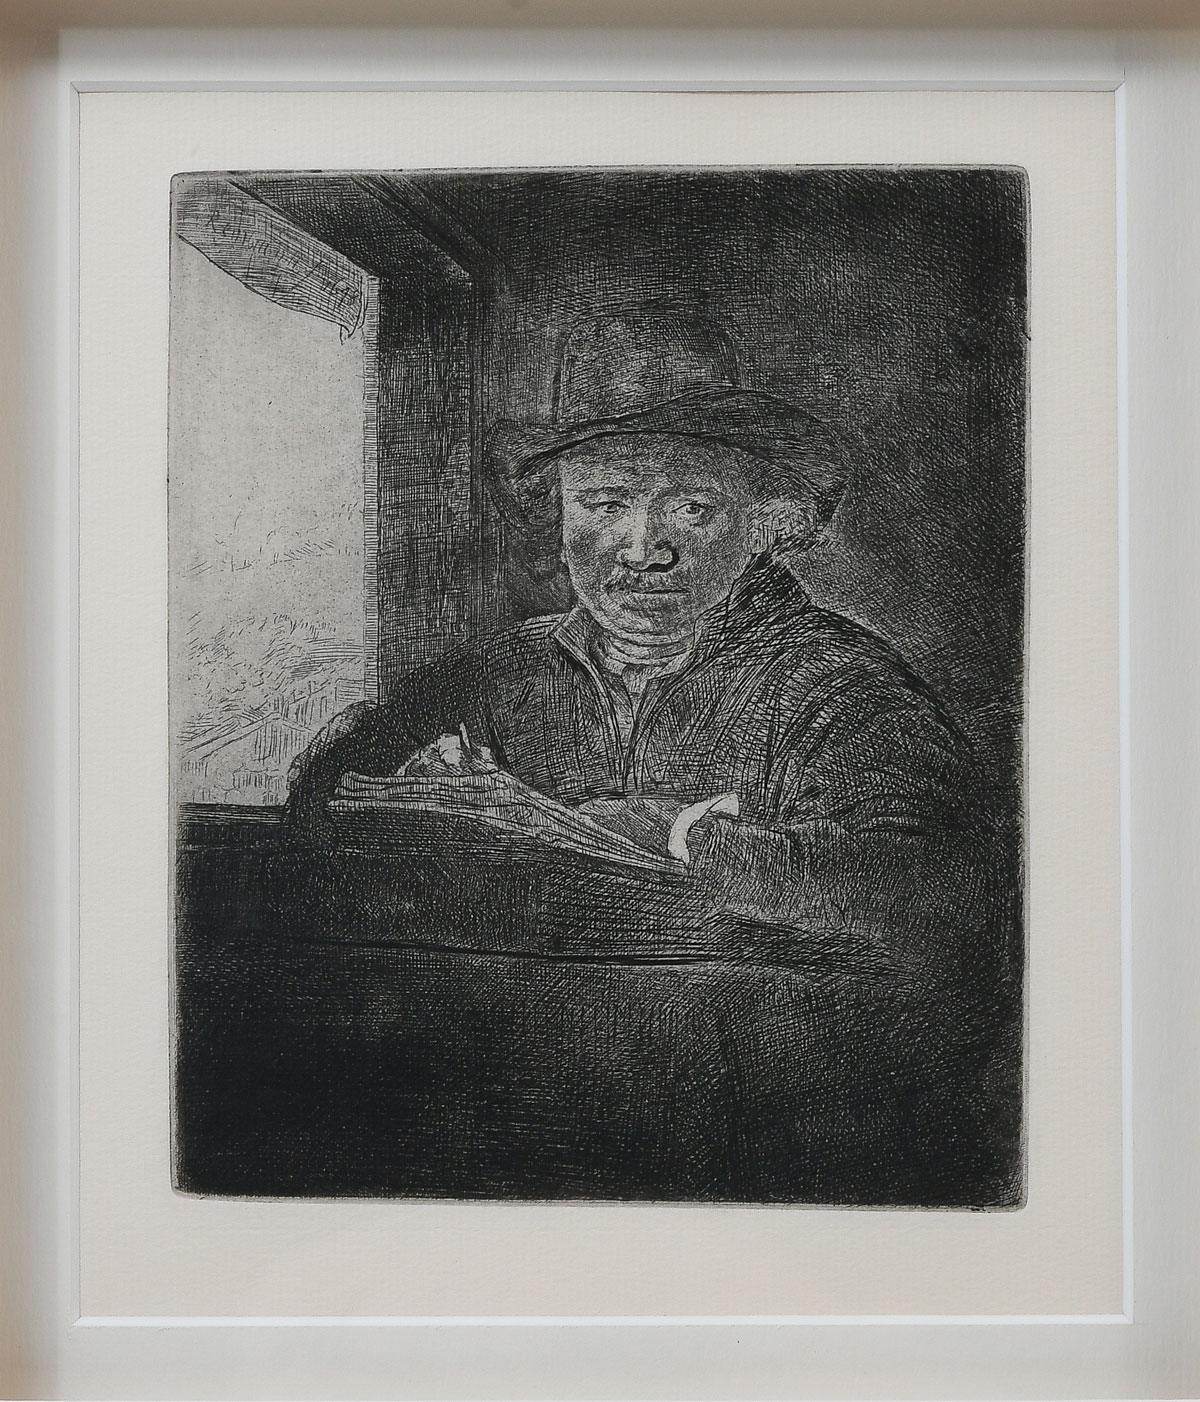 VAN RIJN, Rembrandt, (Dutch, 1606-1669):